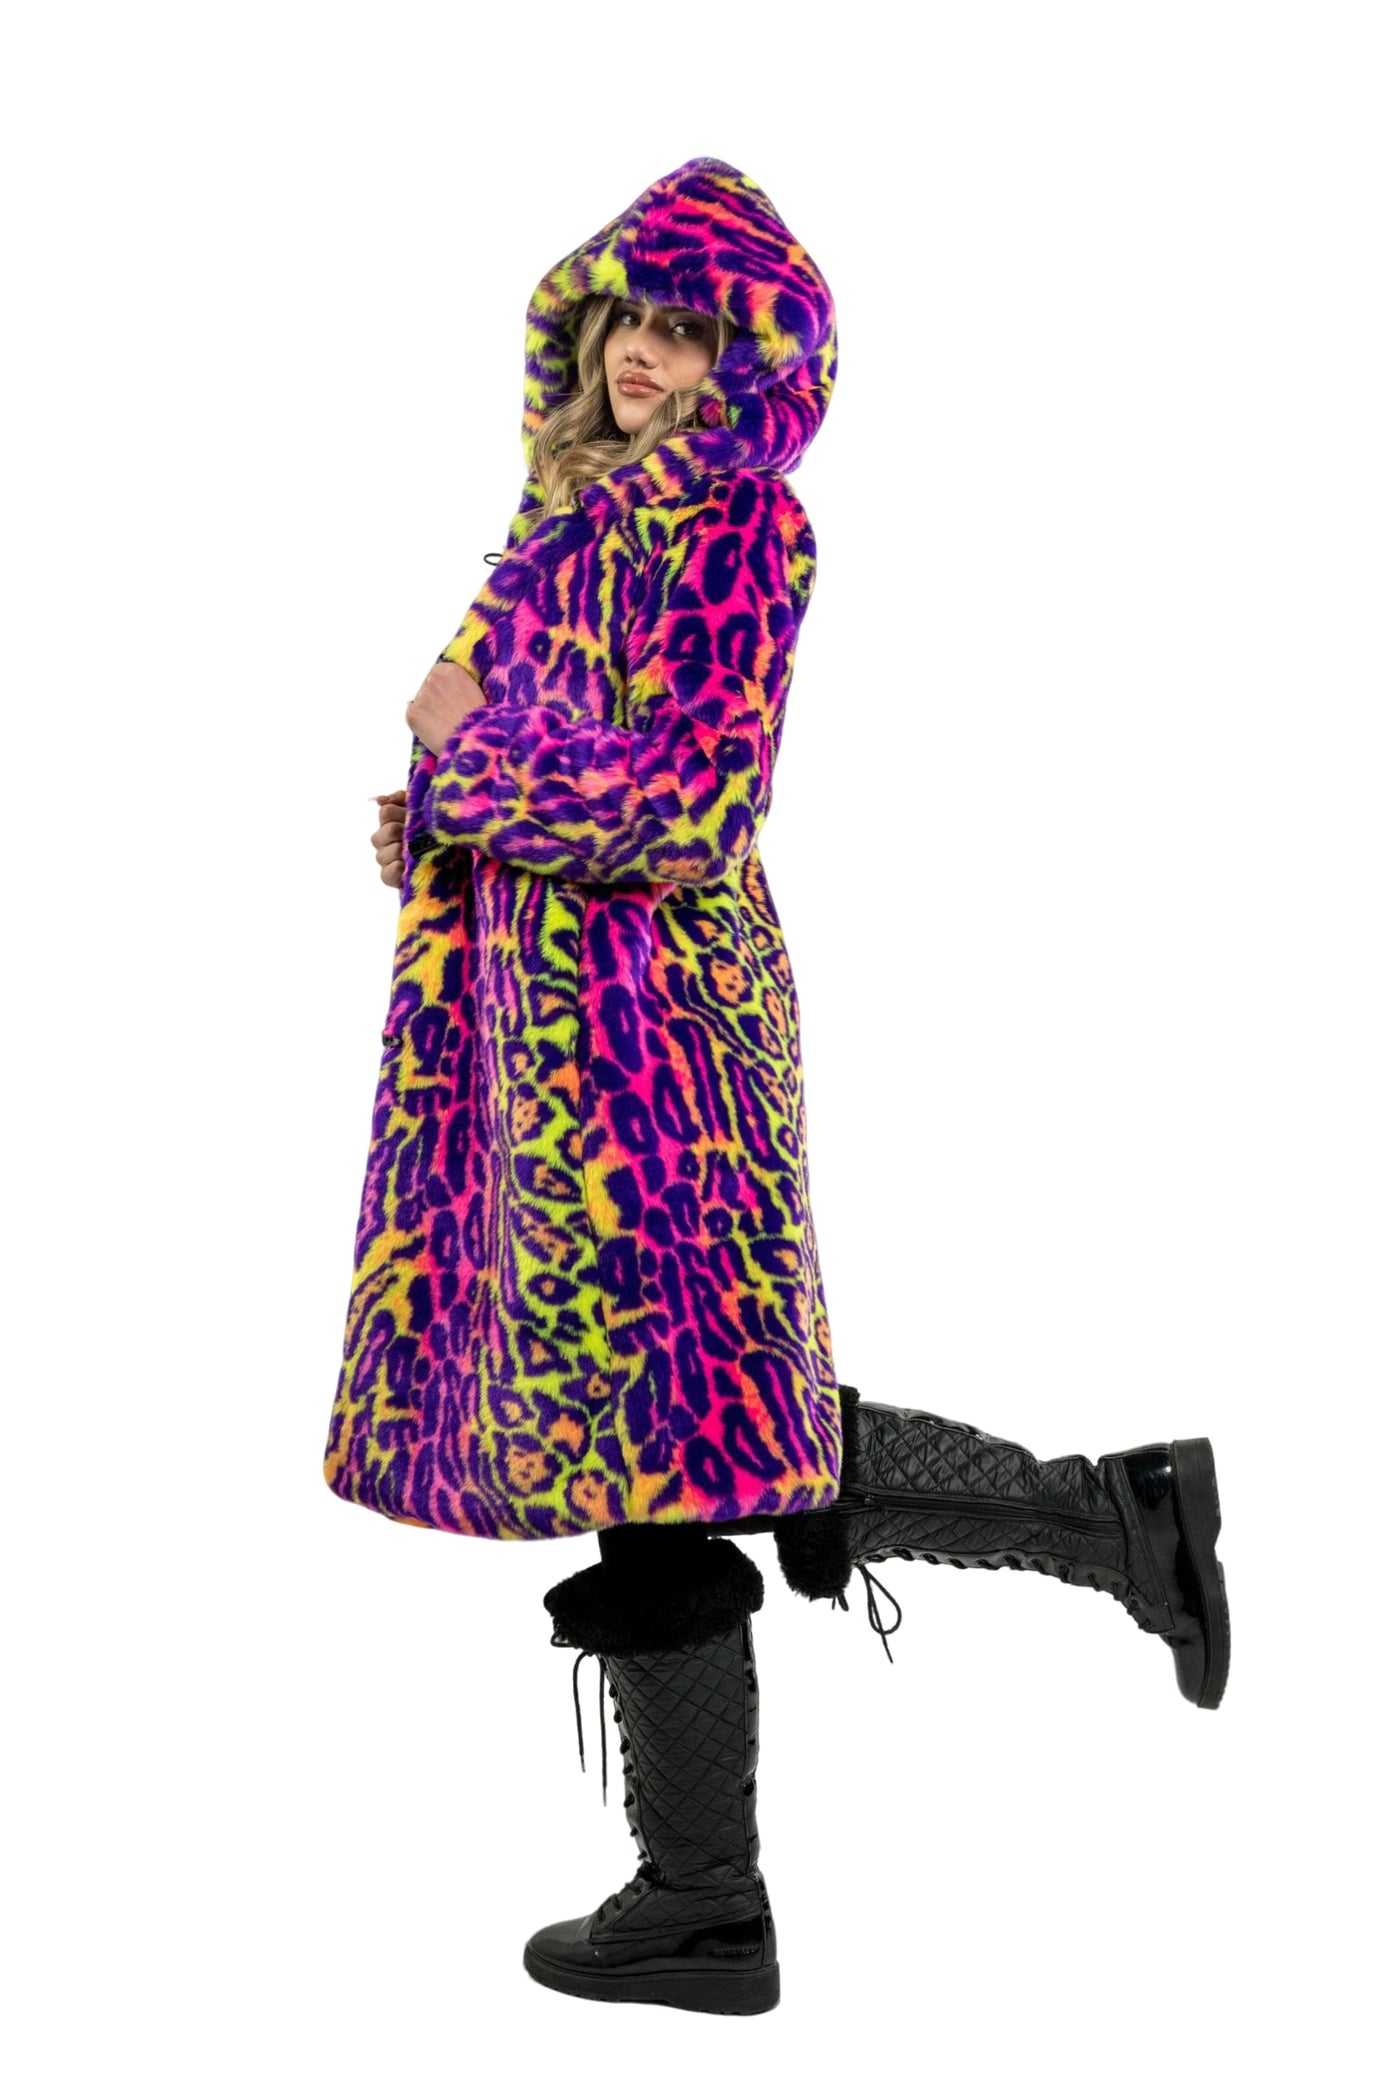 Women's Playa Coat in "Neon Cheetah"